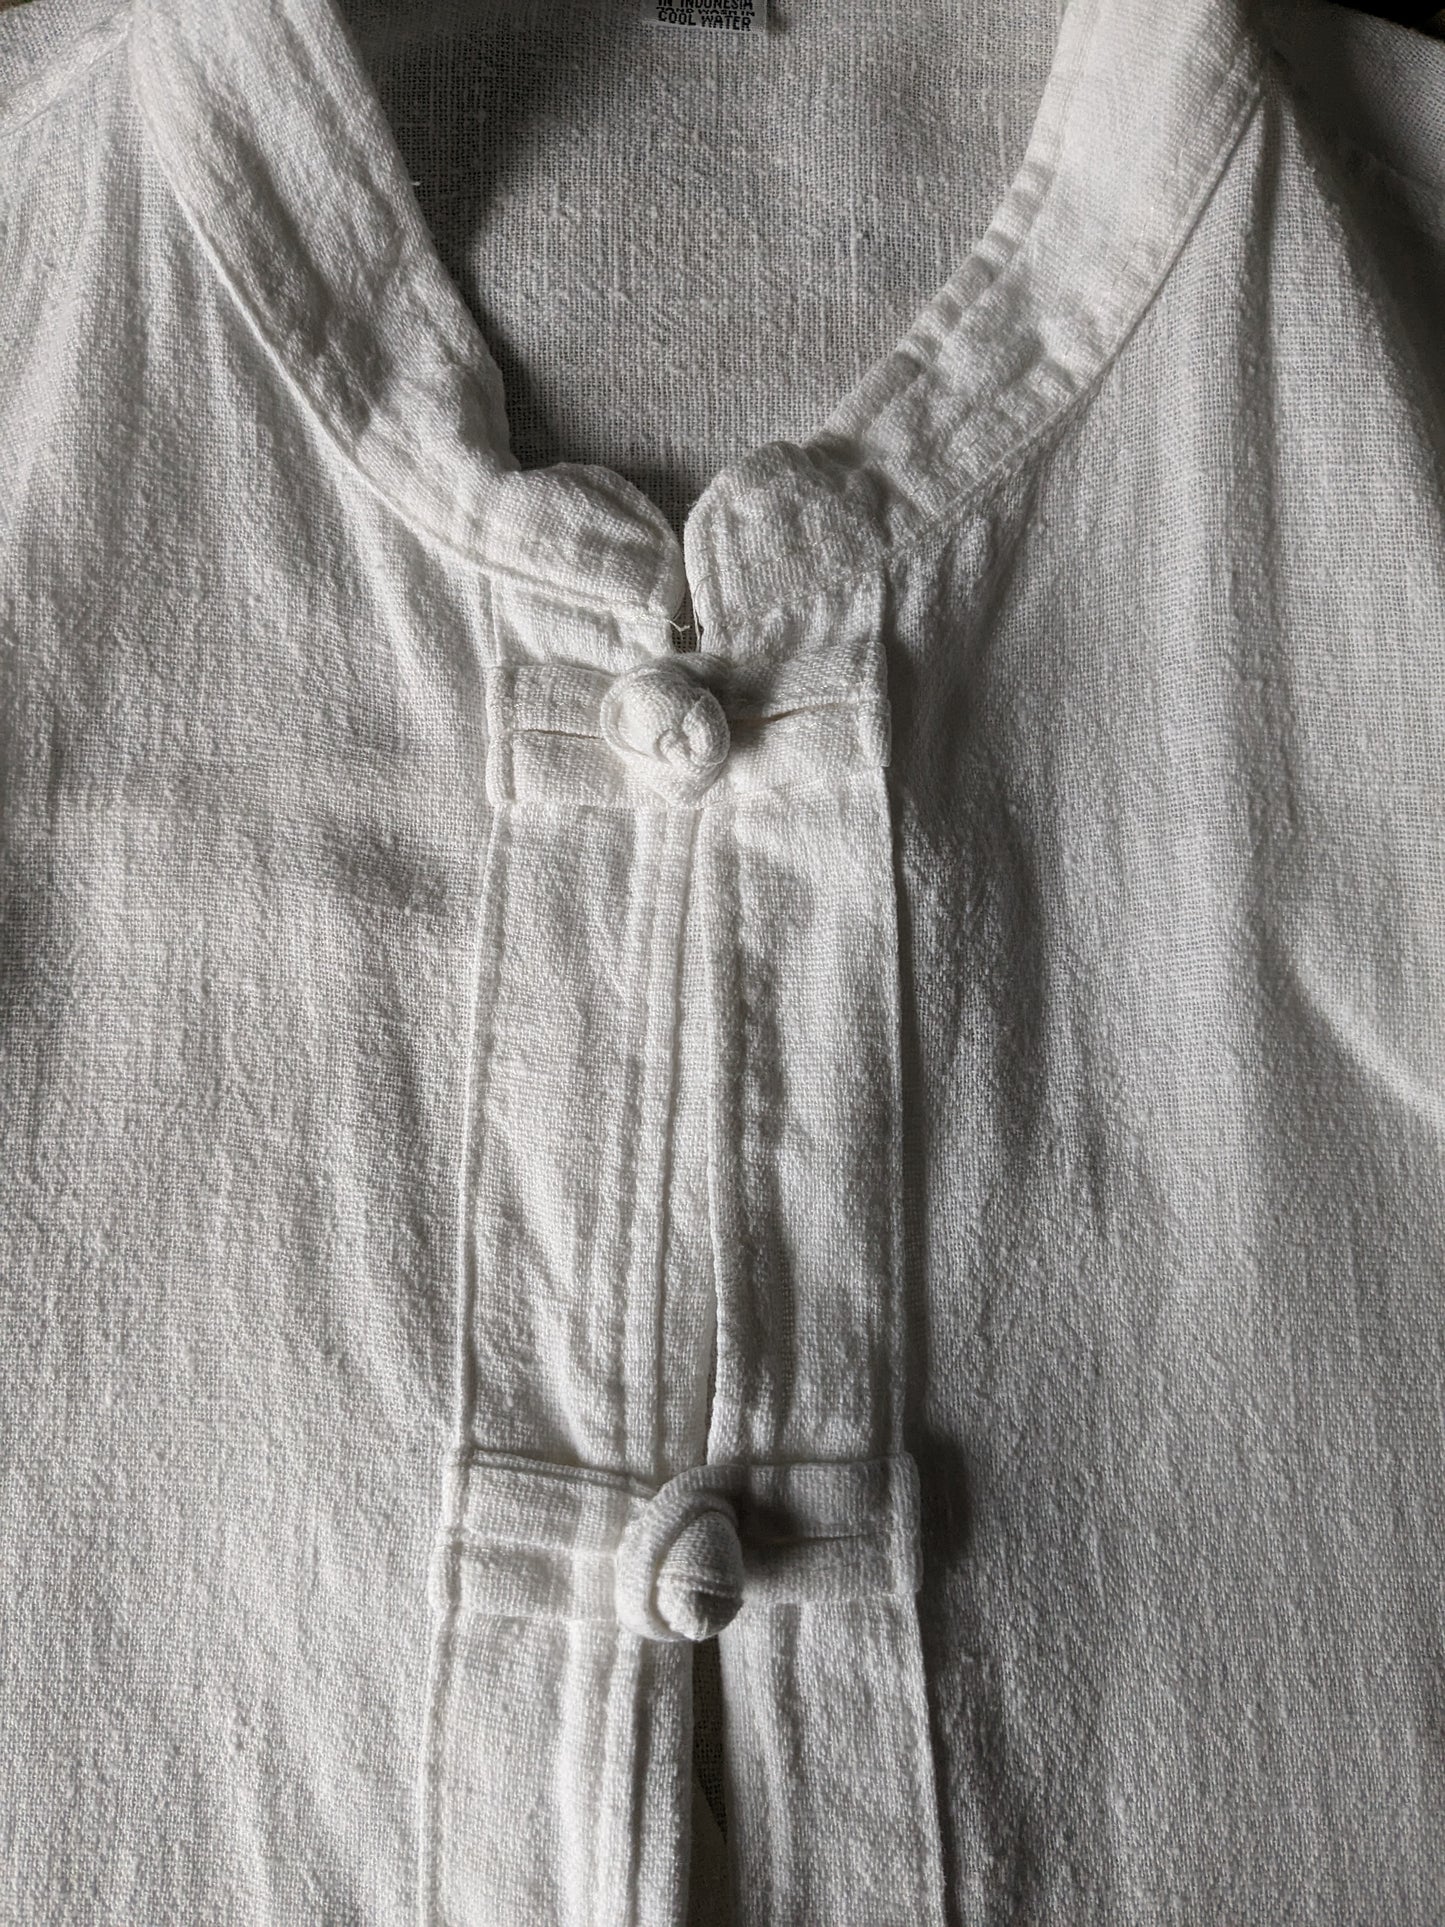 Camicia vintage con colletto MAO / rialzato. Nodi e borse di cotone. Taglia XL.